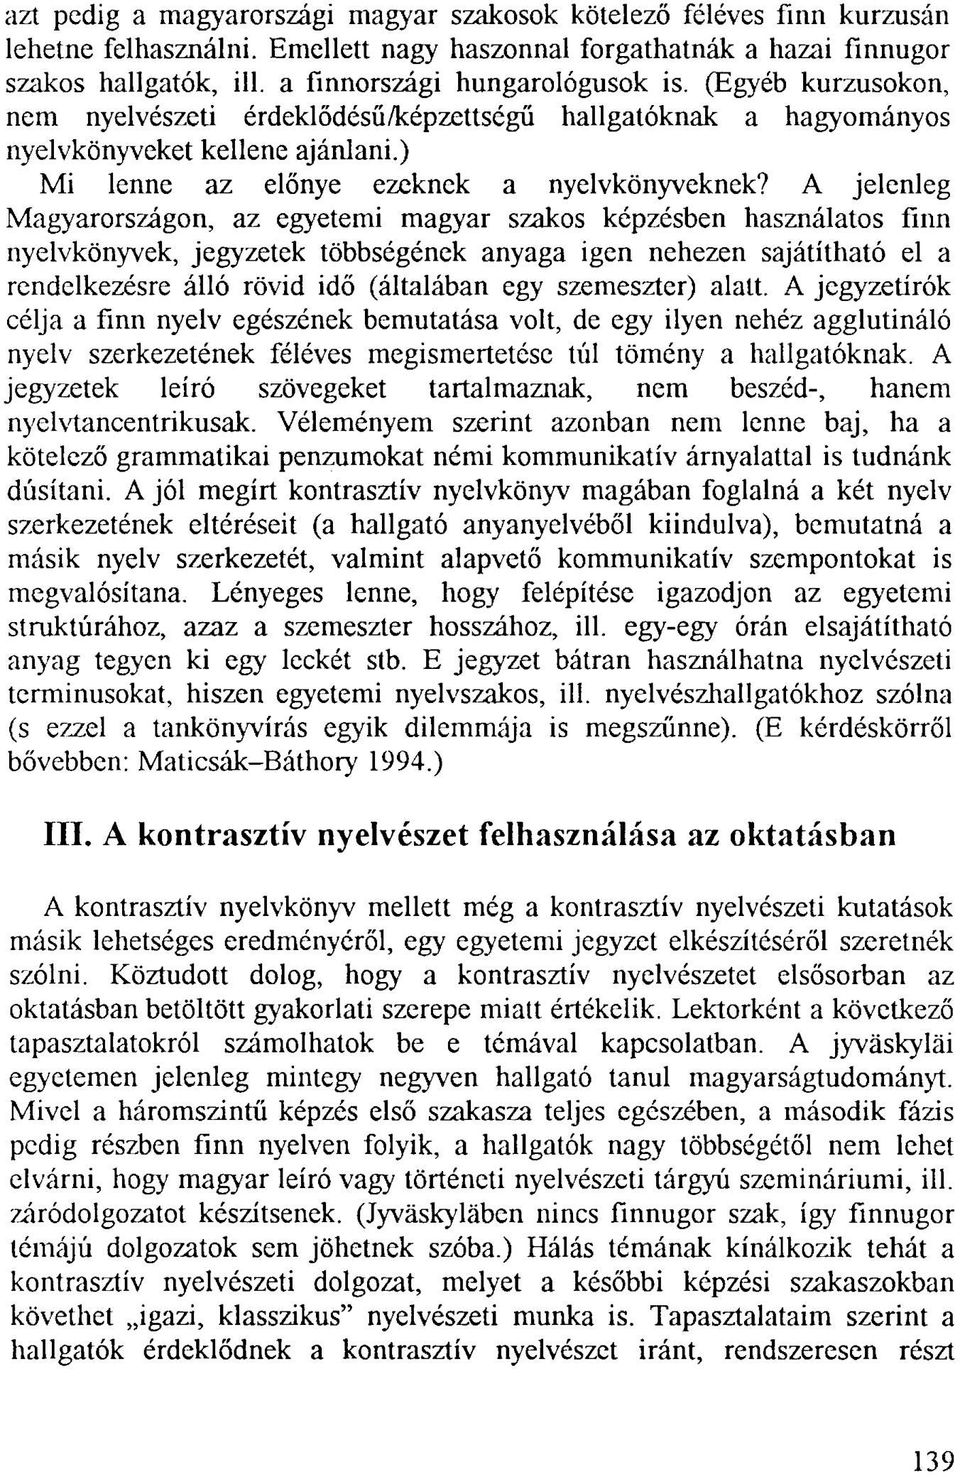 A jelenleg Magyarországon, az egyetemi magyar szakos képzésben használatos finn nyelvkönyvek, jegyzetek többségének anyaga igen nehezen sajátítható el a rendelkezésre álló rövid idő (általában egy